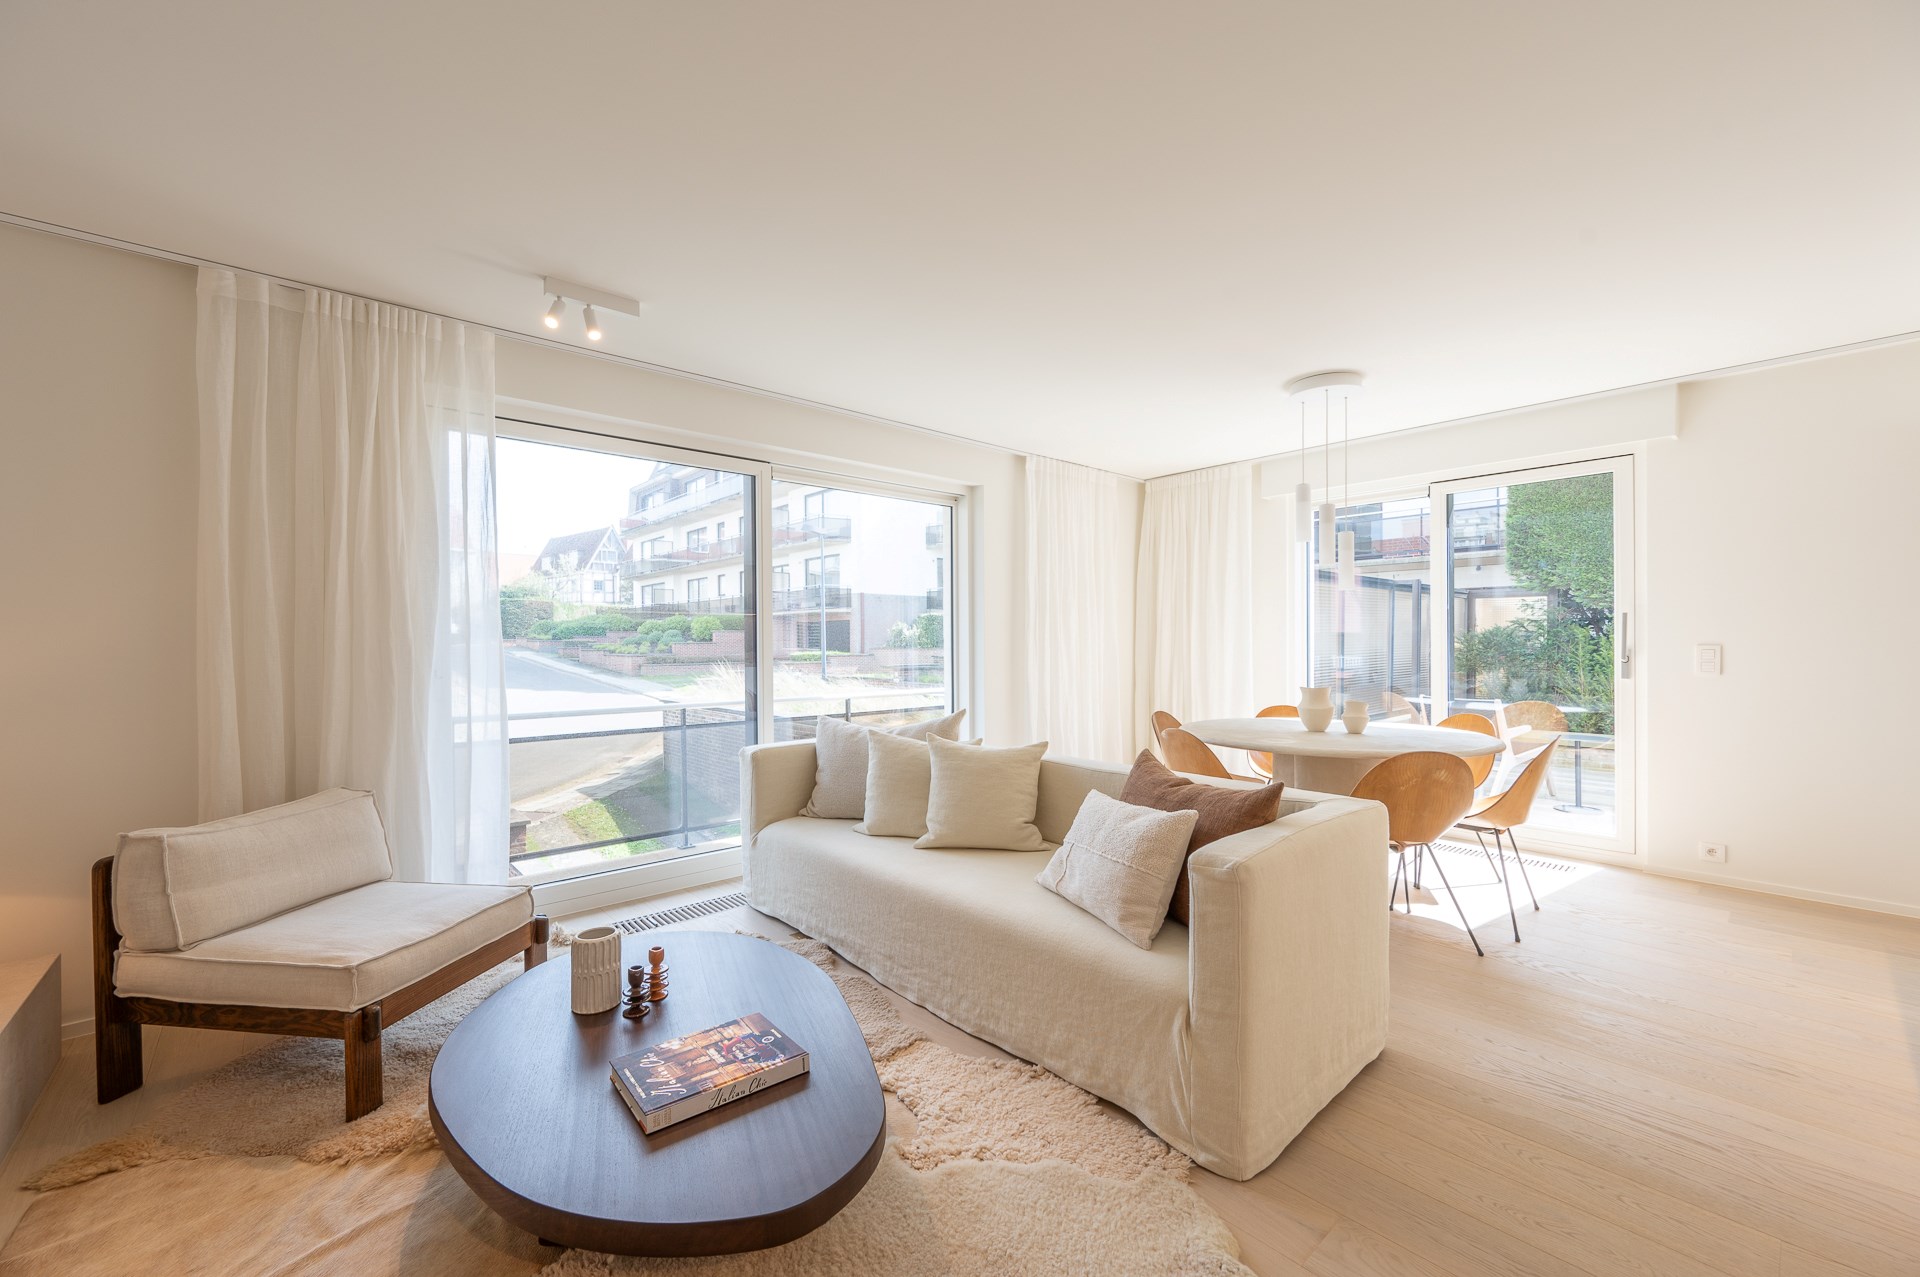 Stijlvol en luxueus gerenoveerd gelijkvloers appartement met twee slaapkamers gelegen op enkele minuten van het strand te Duinbergen.  foto 3